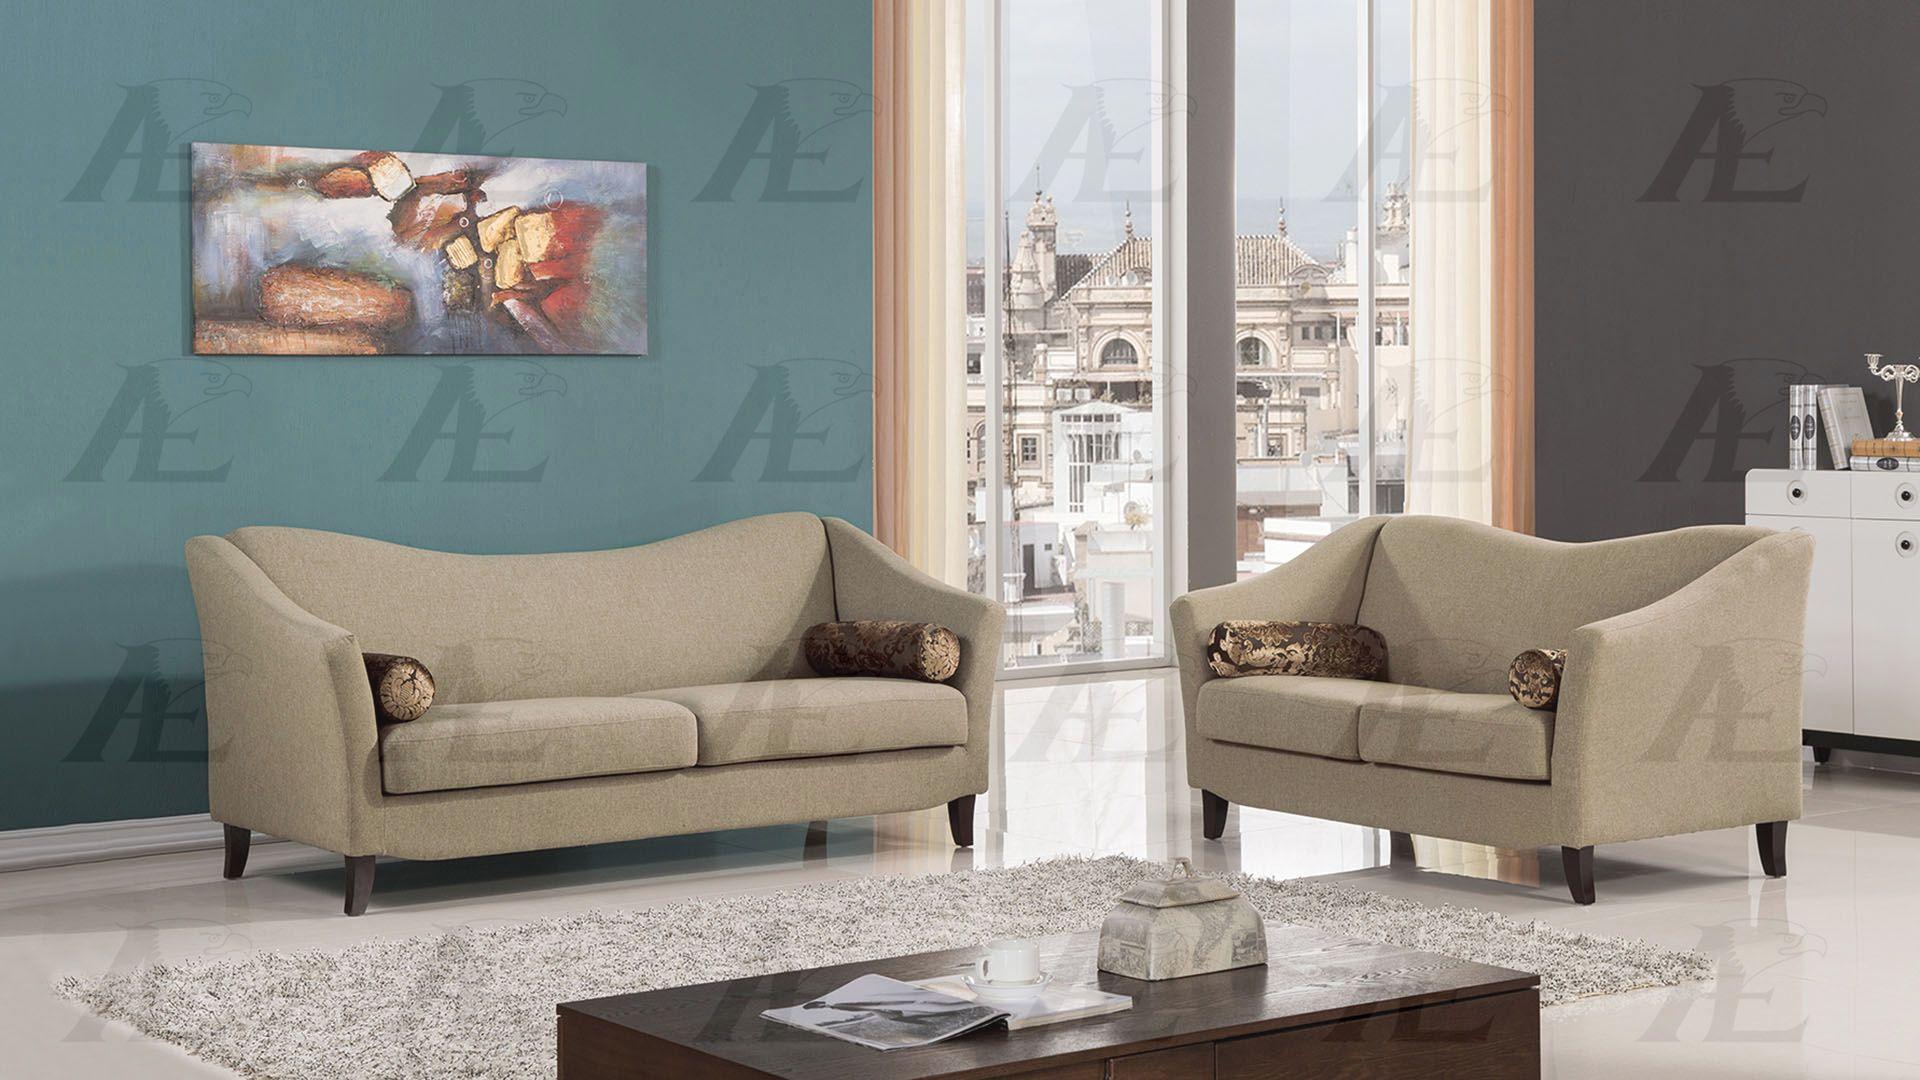 

    
American Eagle Furniture AE2371 Tan Fabric Tufted Sofa and Loveseat Set Contemporary 2Pcs
